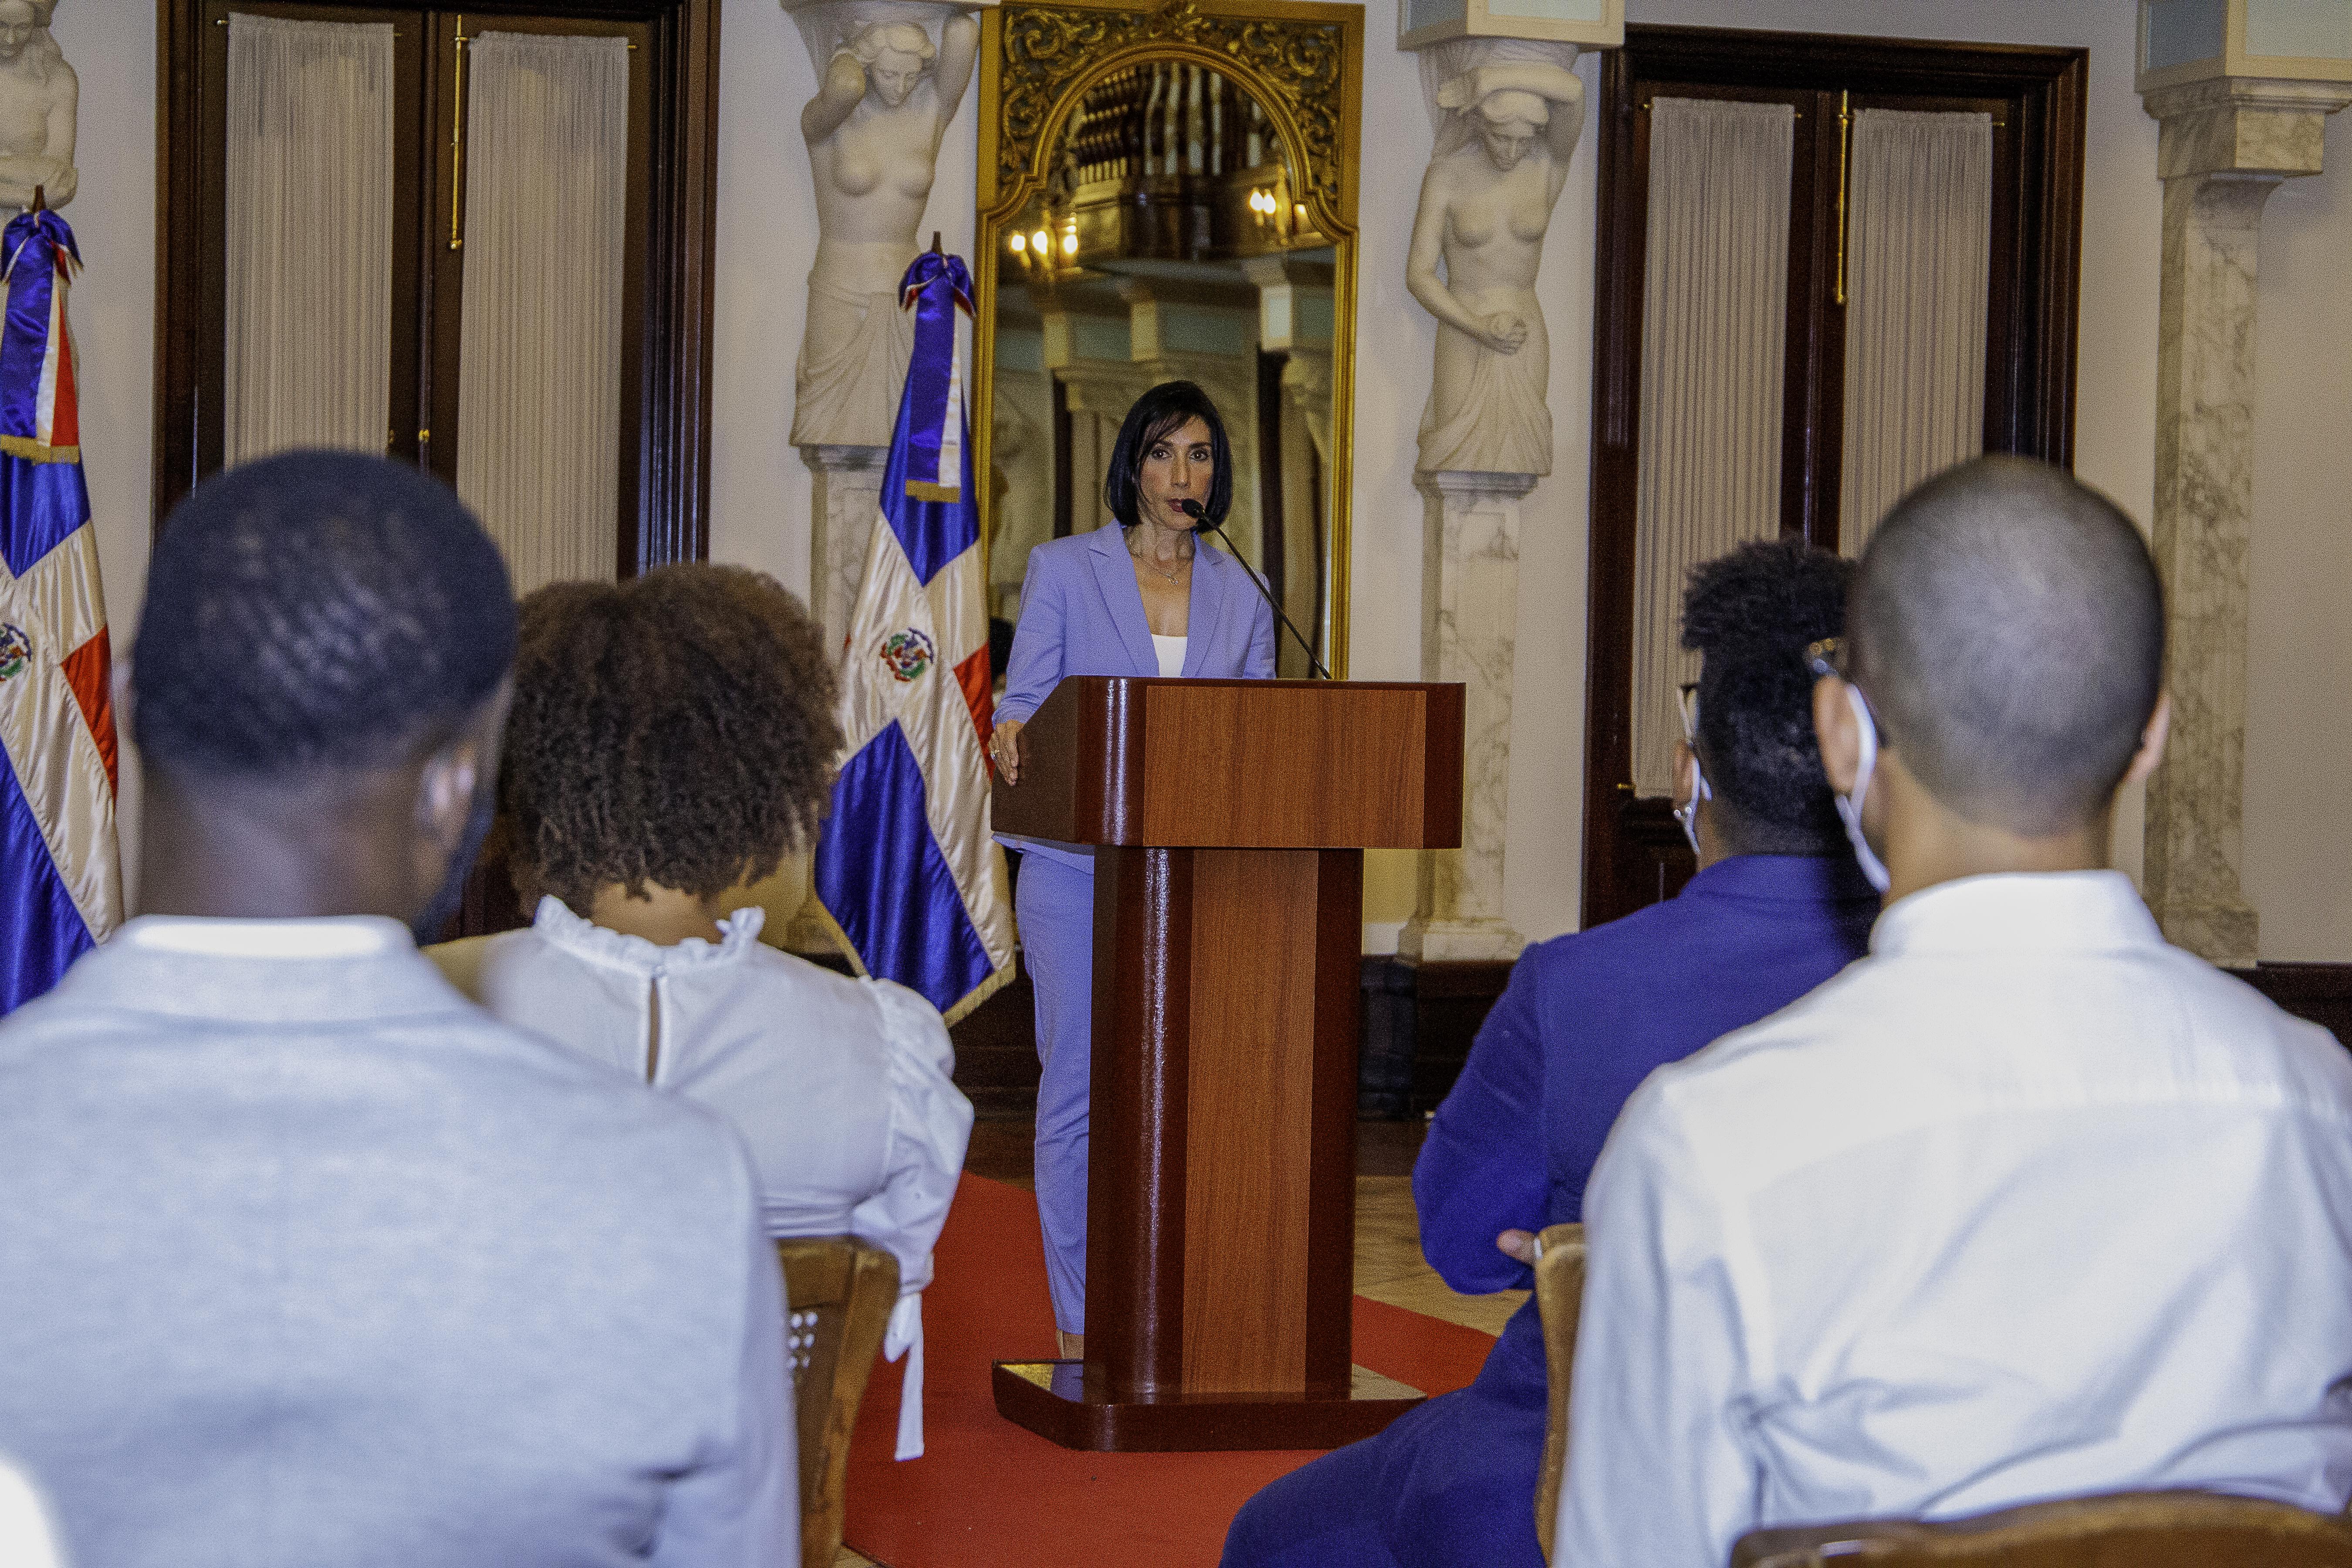 REPÚBLICA DOMINICANA: La primera dama exhorta a los jóvenes a denunciar los males sociales